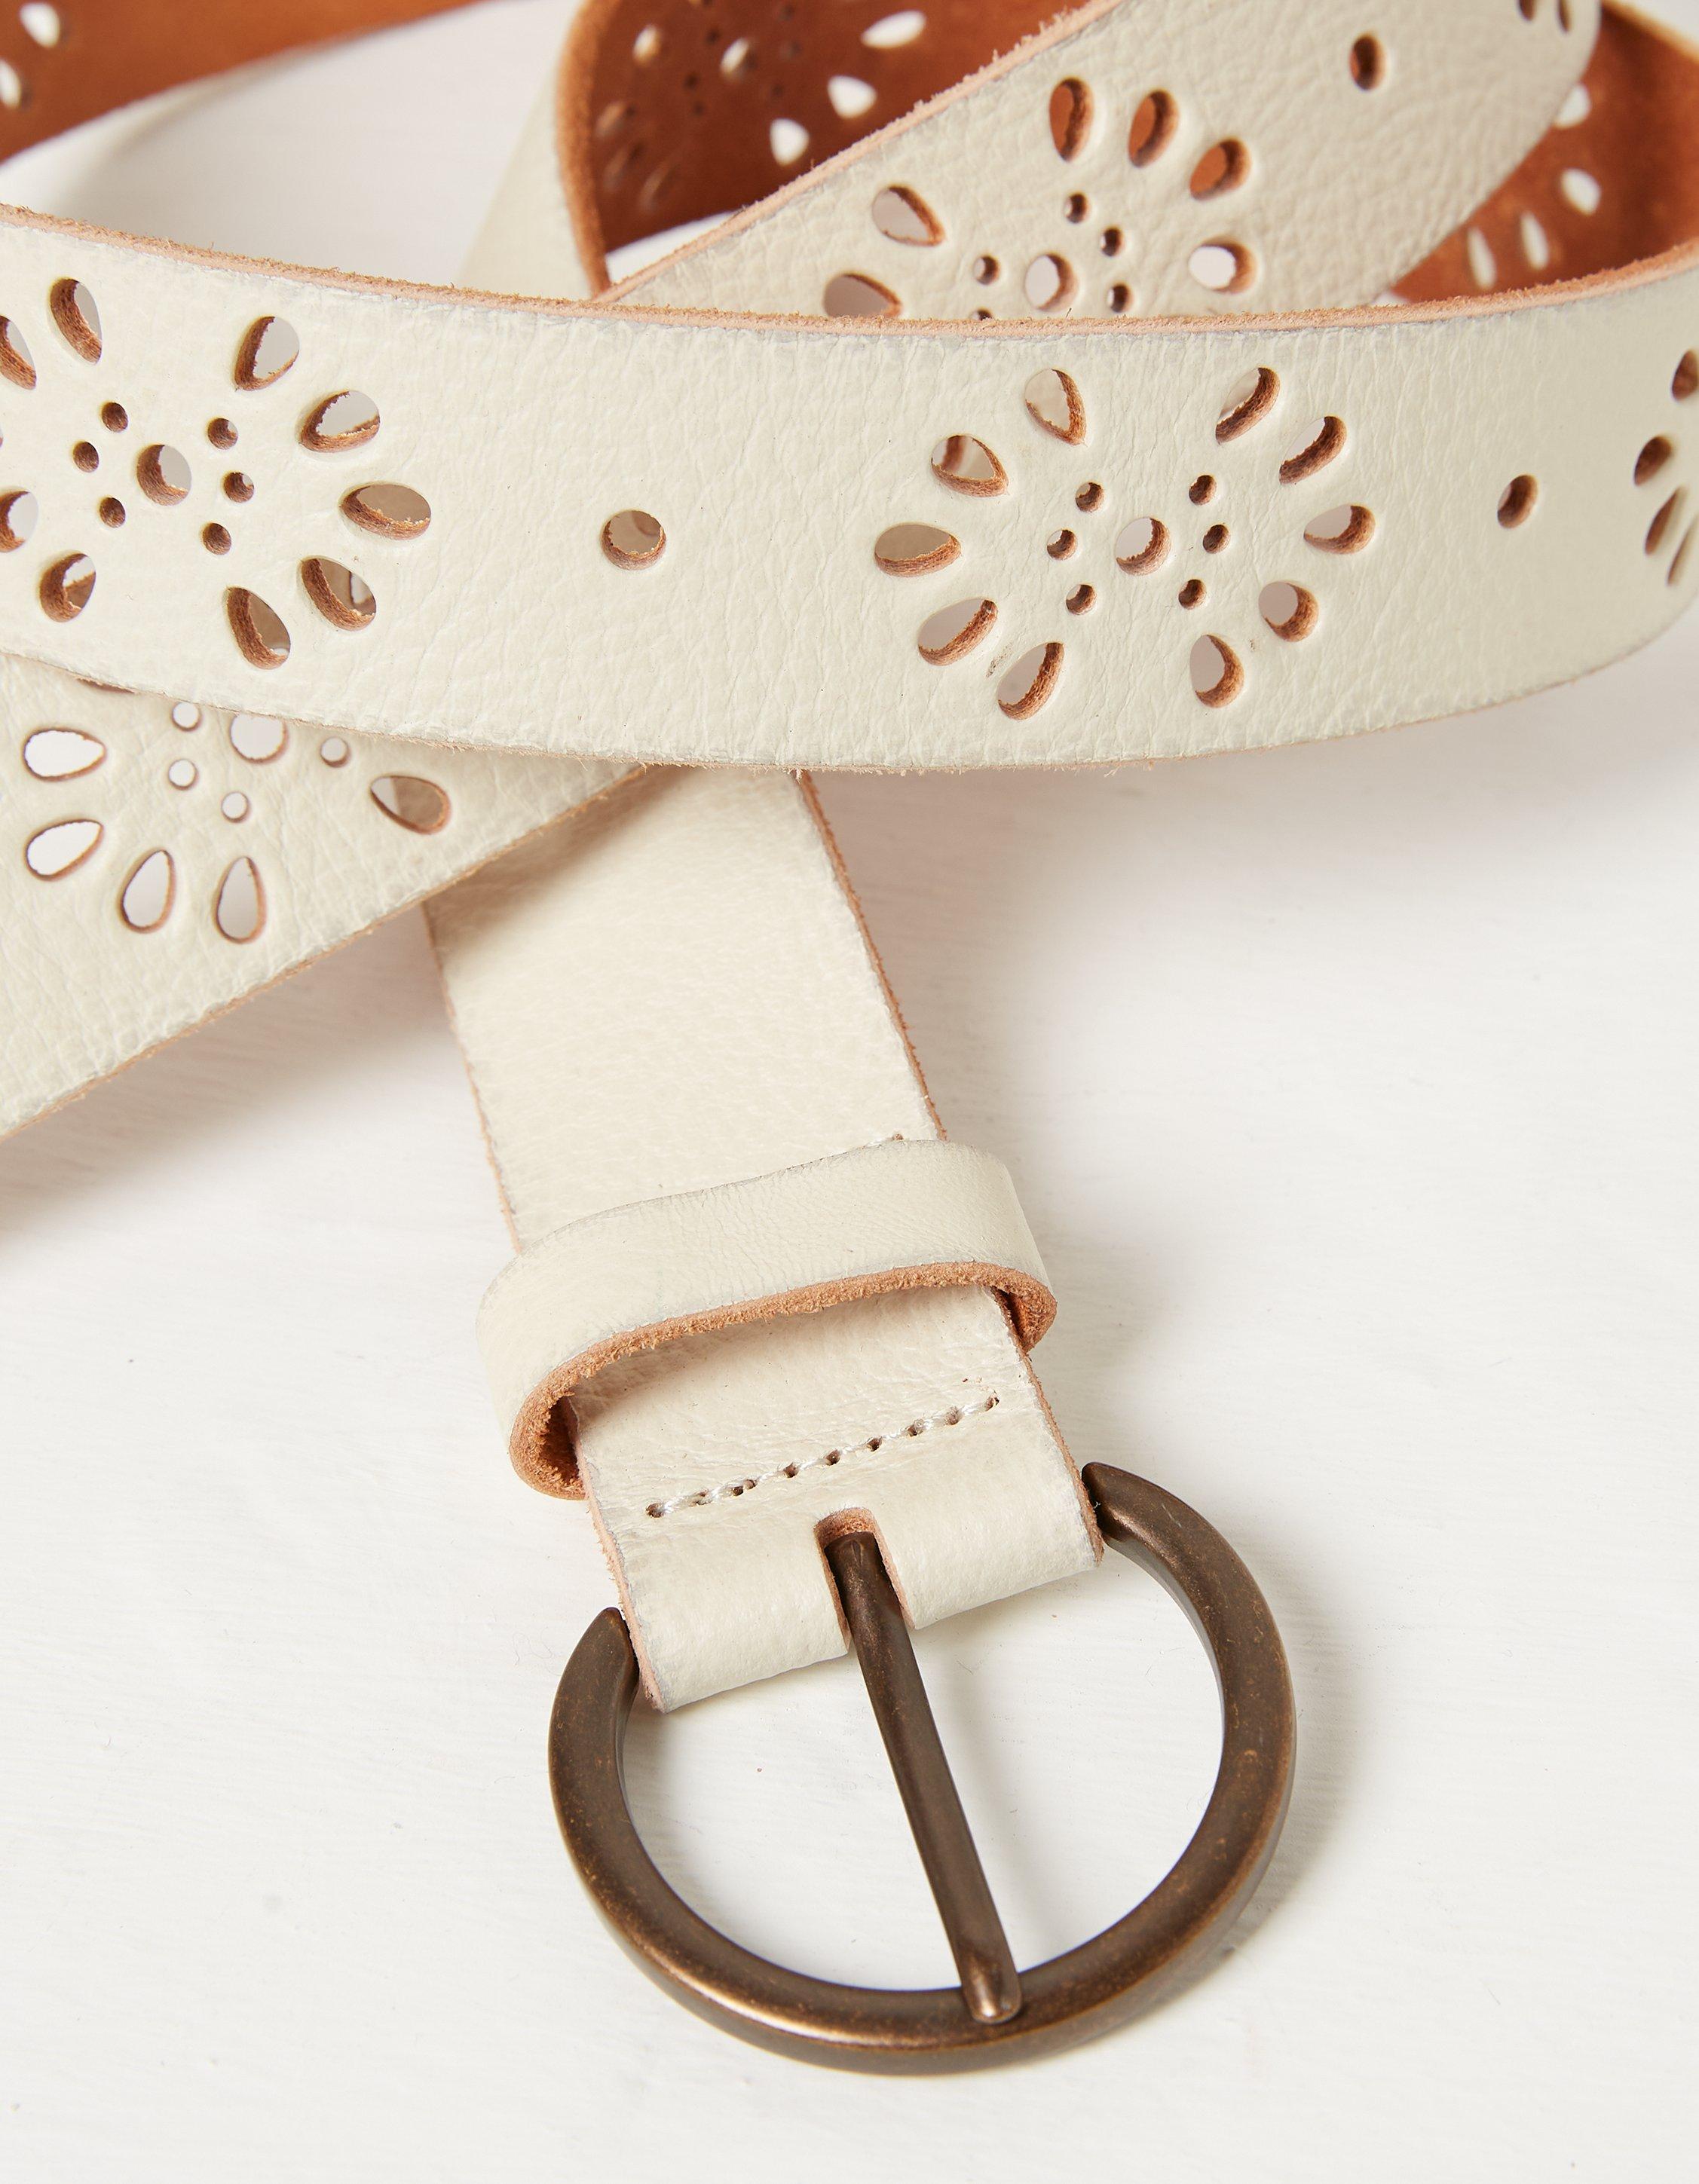 Belts For Women - Buy Women Belts @Min 50% Off Online at Best